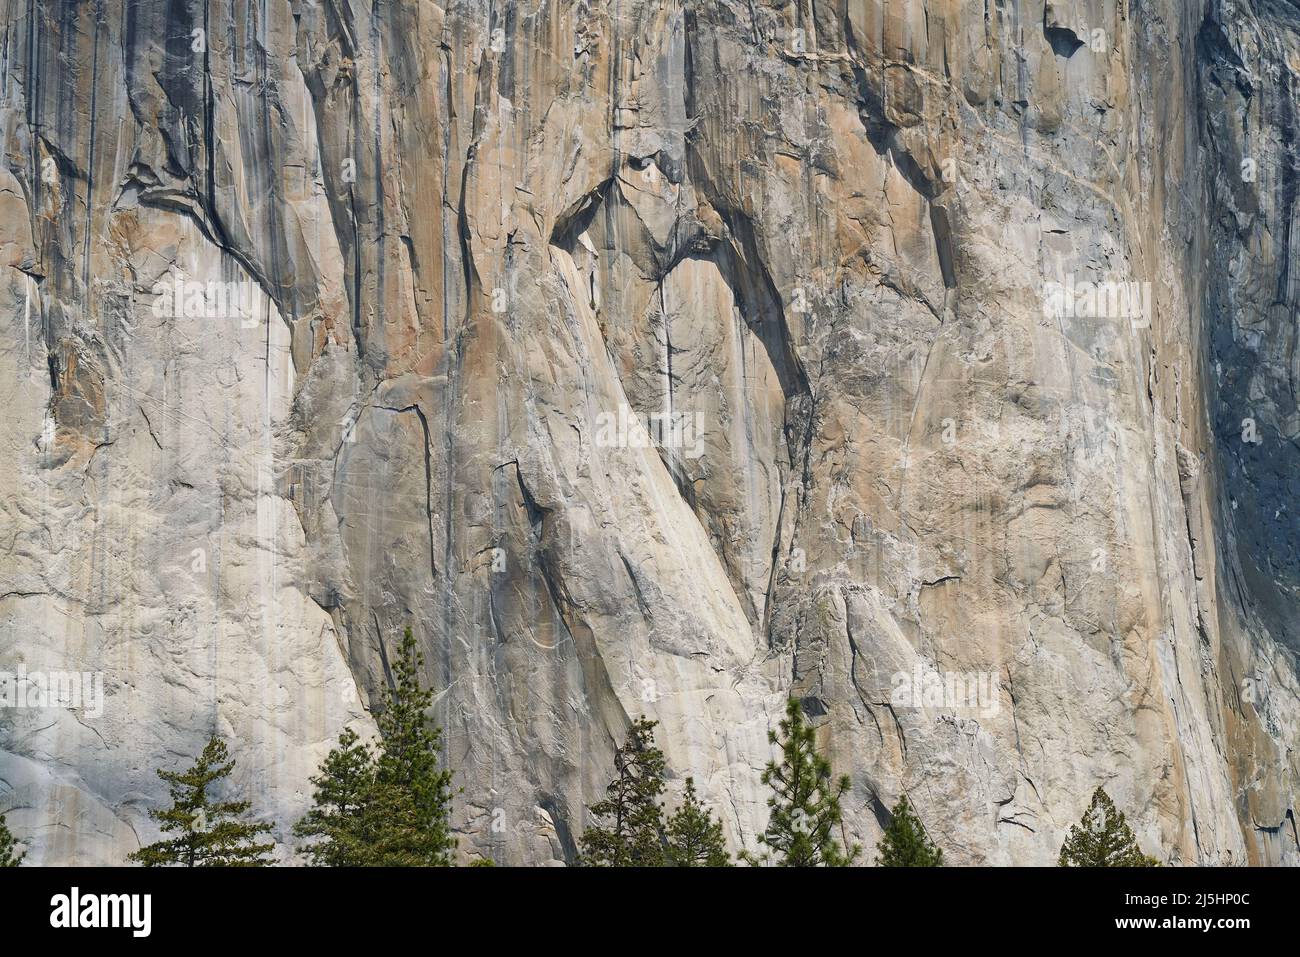 Heart shaped crack in the granite rock of El Capitan, Yosemite National Park, California. Stock Photo